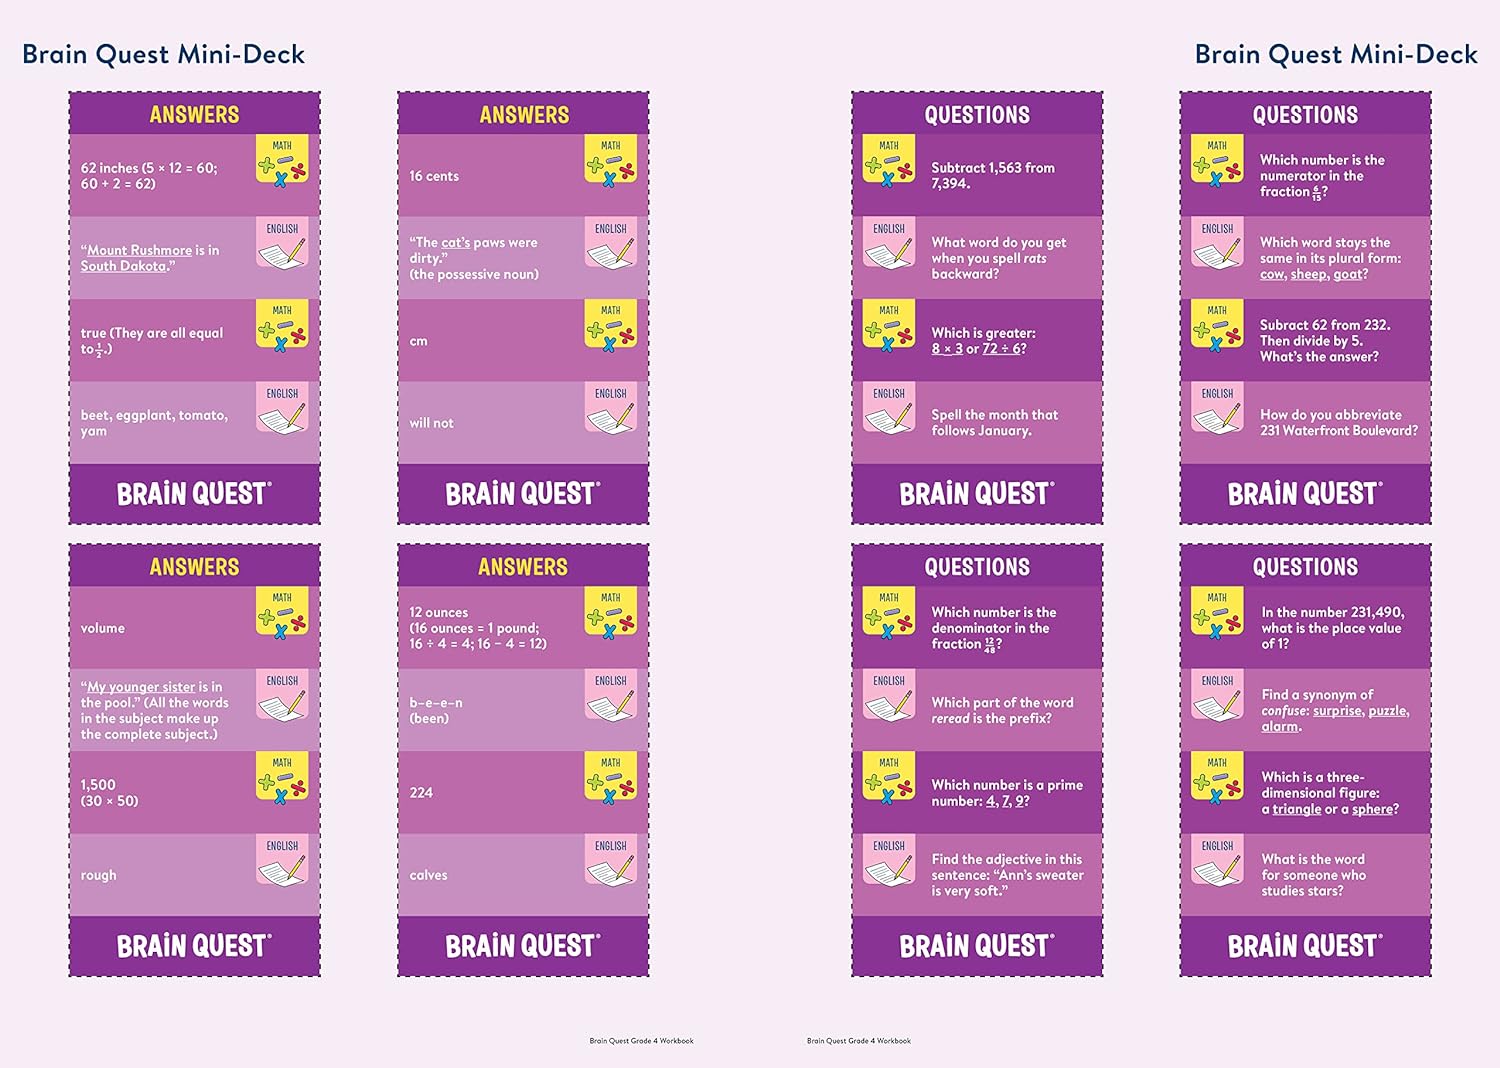 Brain Quest Workbooks: Grade 4